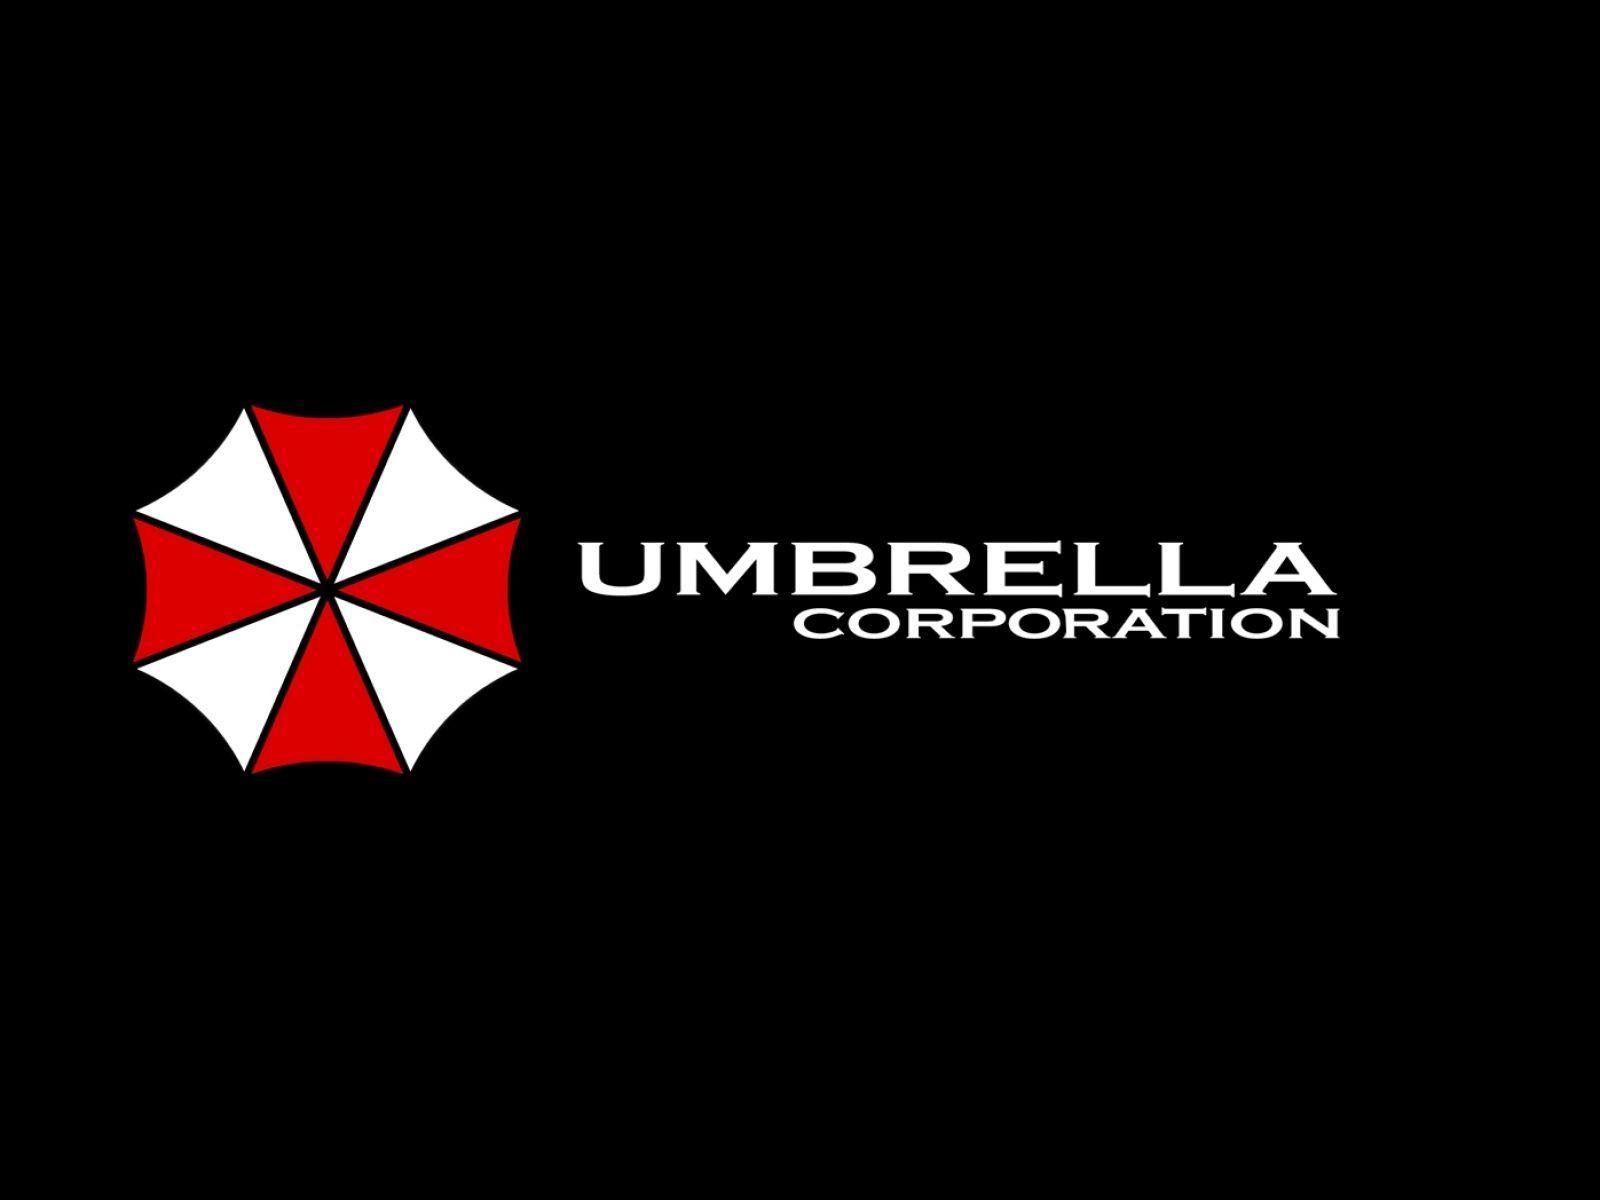 Umbrella Company Logo - umbrella corporation | company logos | Pinterest | Umbrella ...